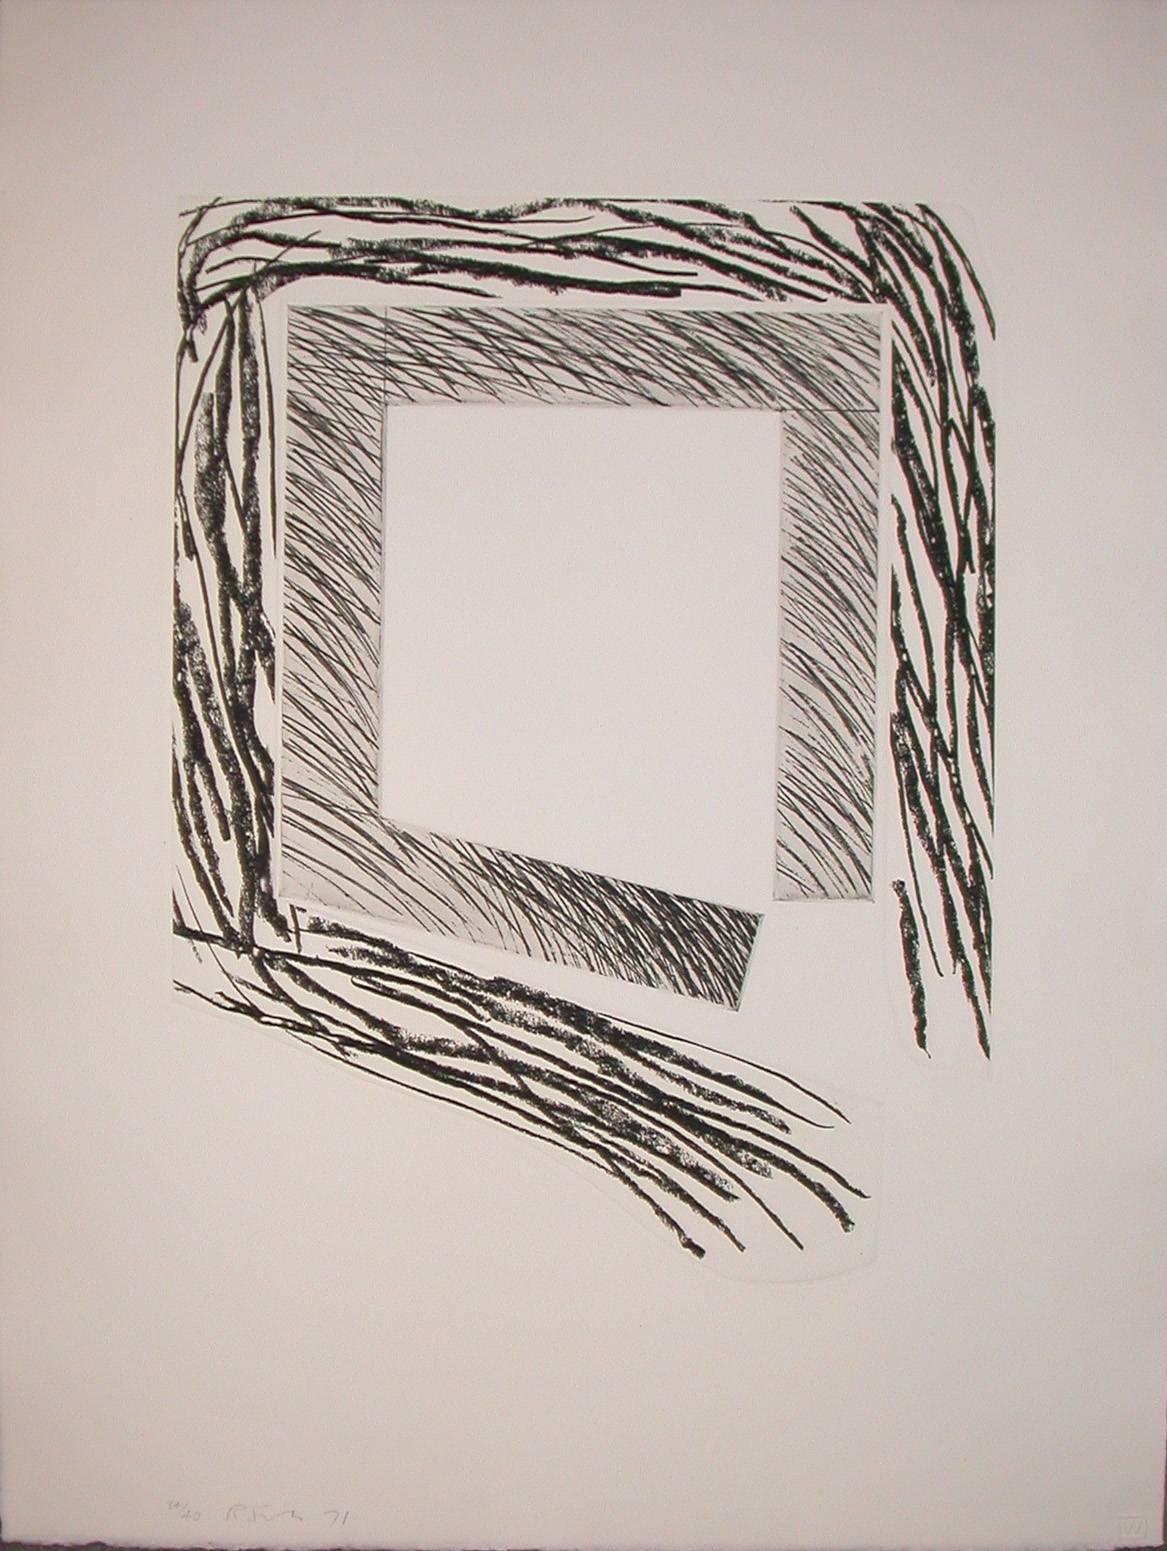 Richard Smith Print – Proscenium II (lose Linien rund um die quadratische Mitte)